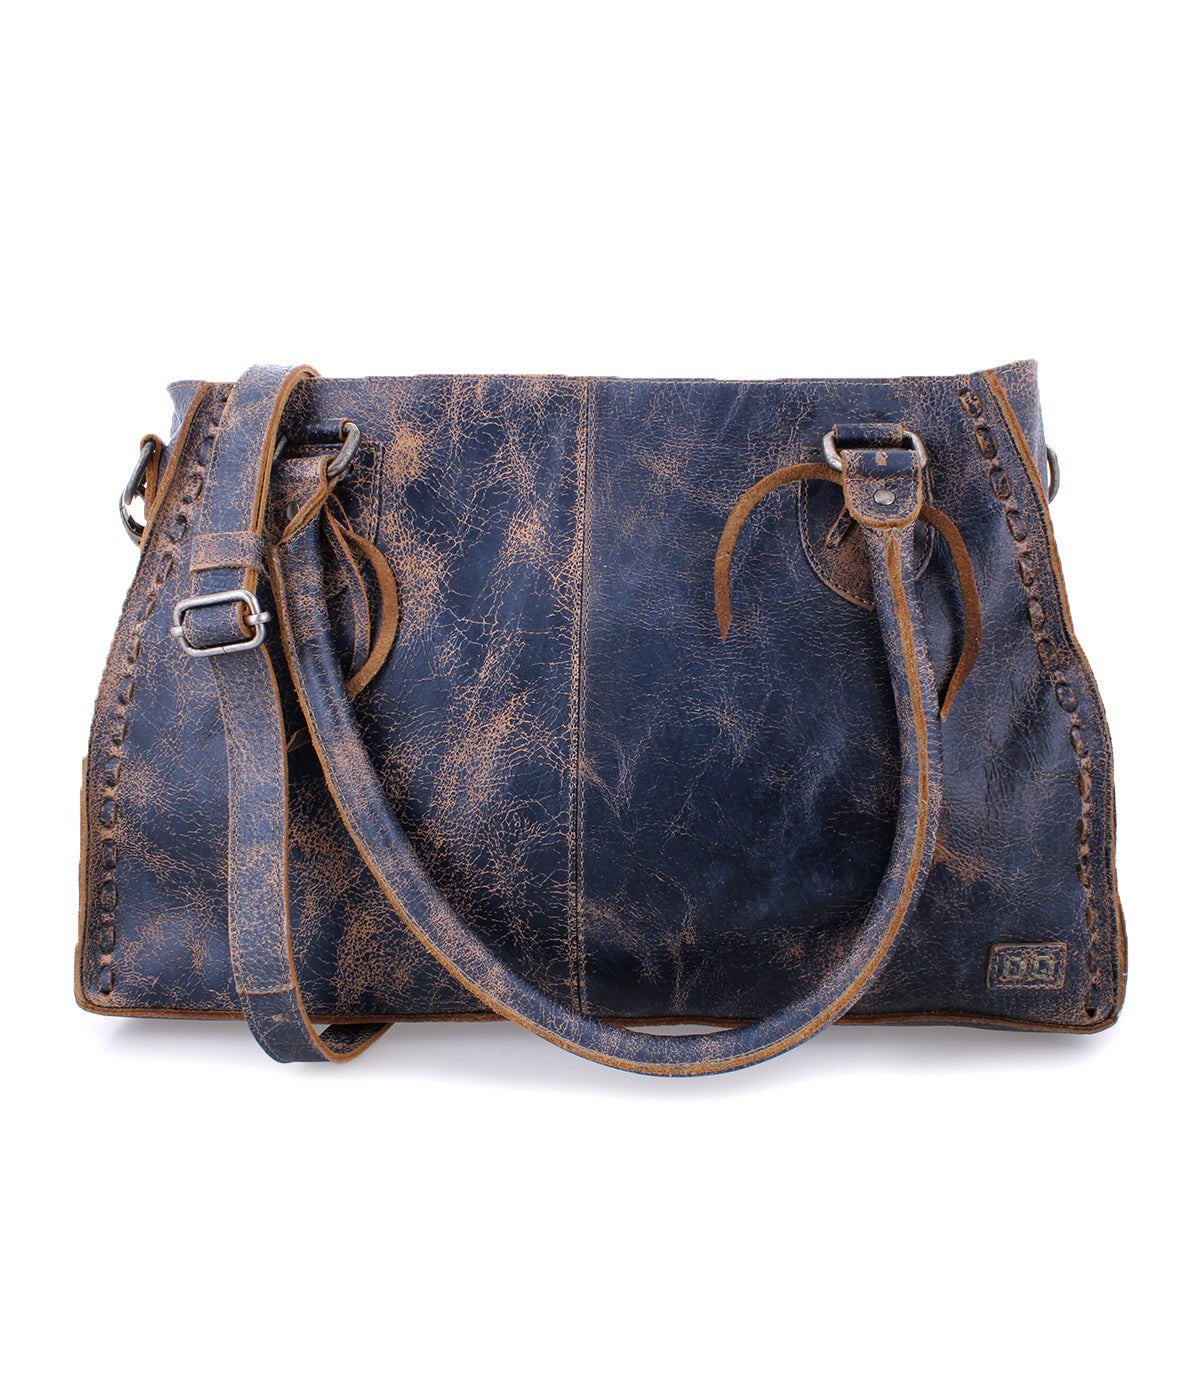 A Rockababy handbag by Bed Stu in cobalt lux color.